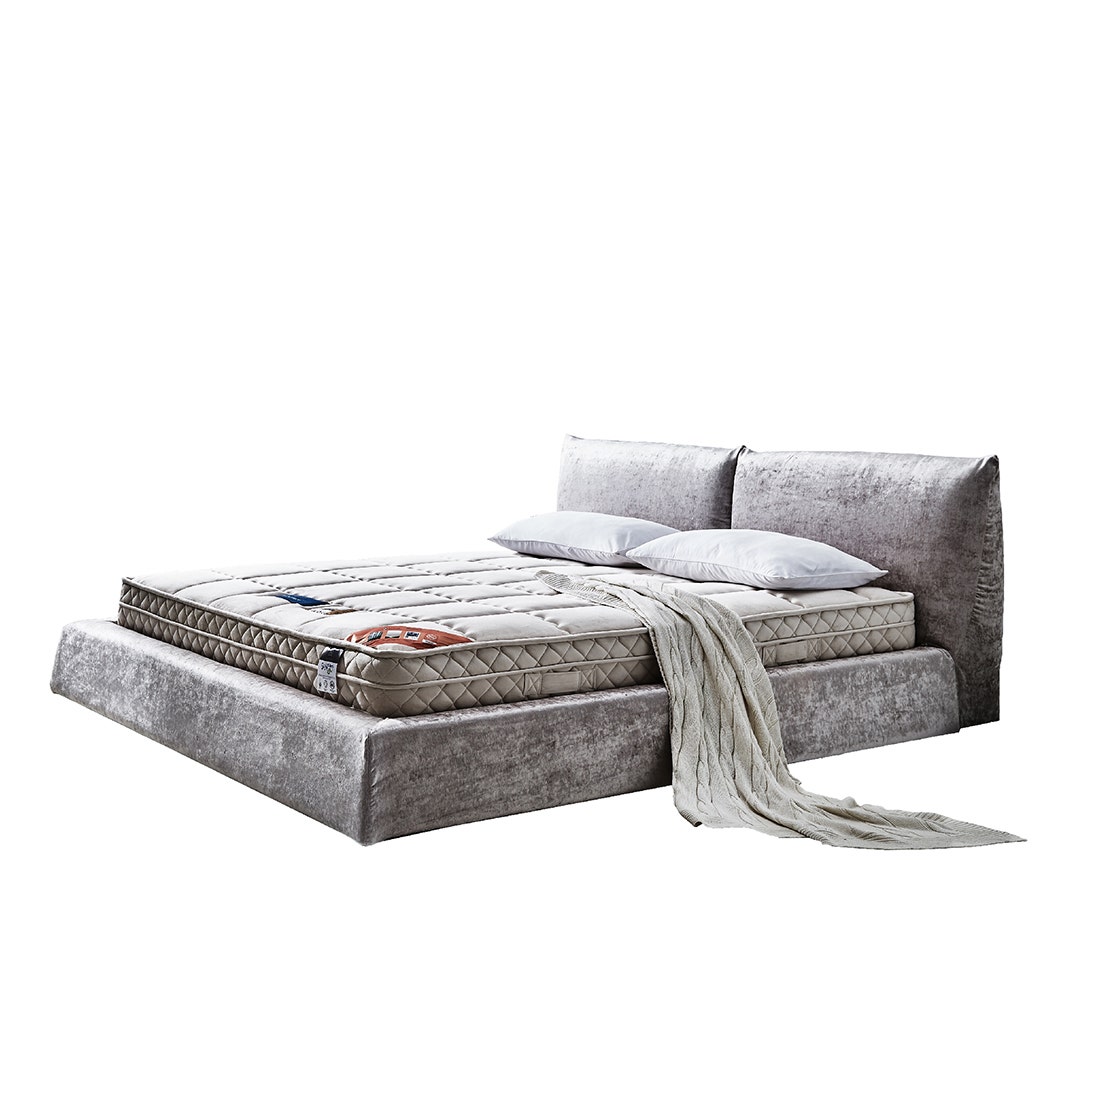 39004964-mattress-bedding-mattresses-spring-mattresses-02